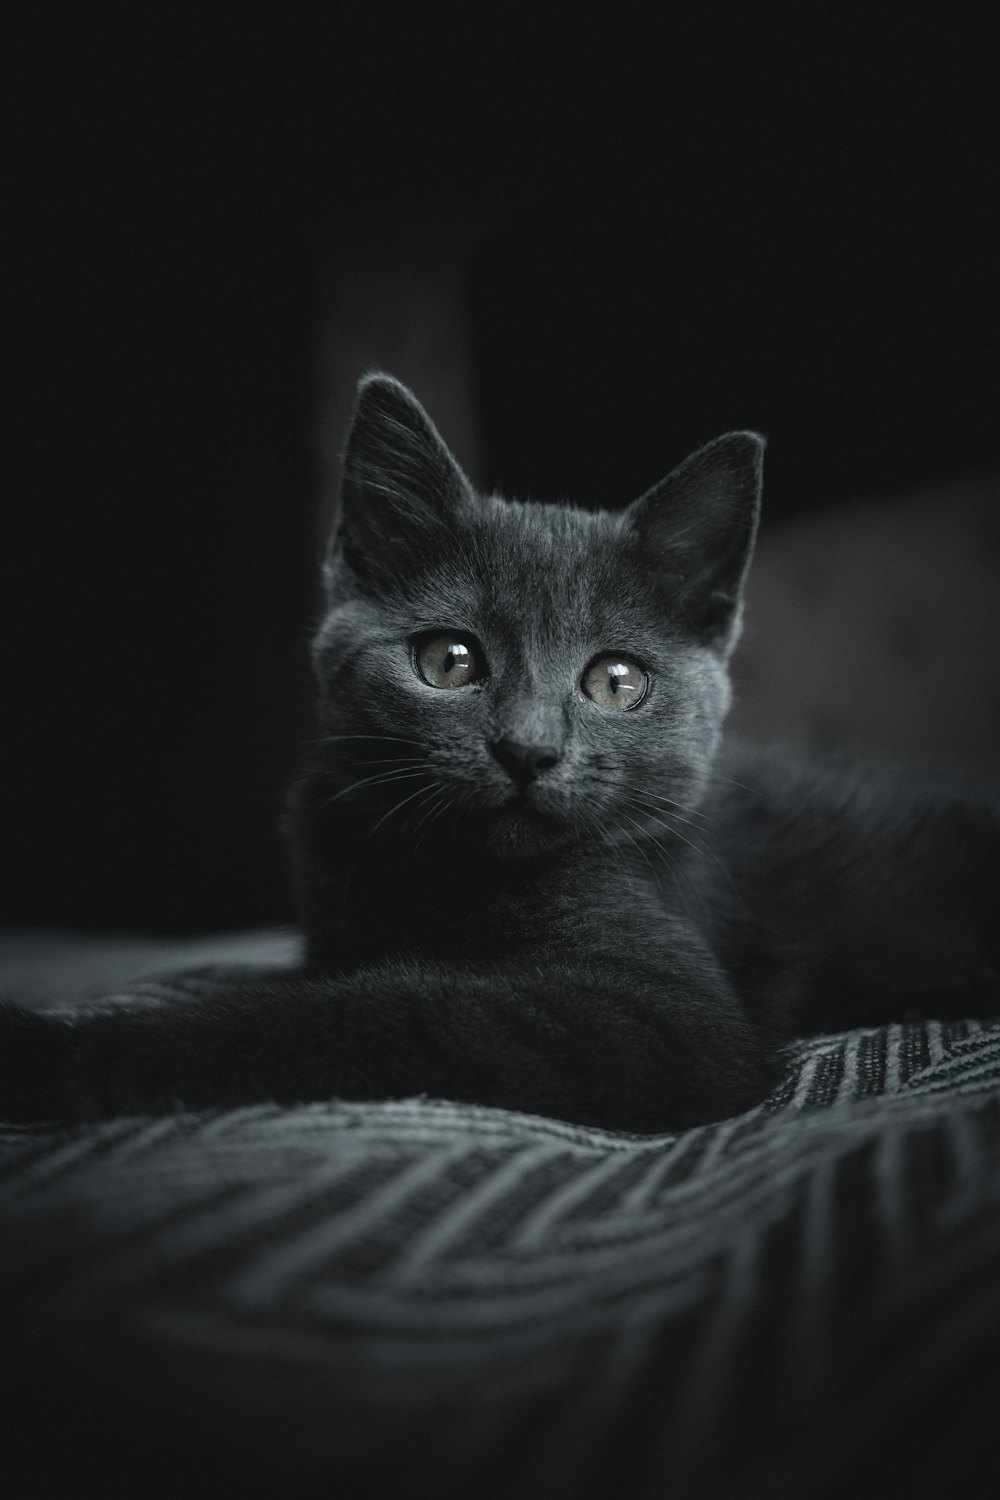 gato negro sobre tela blanca y negra